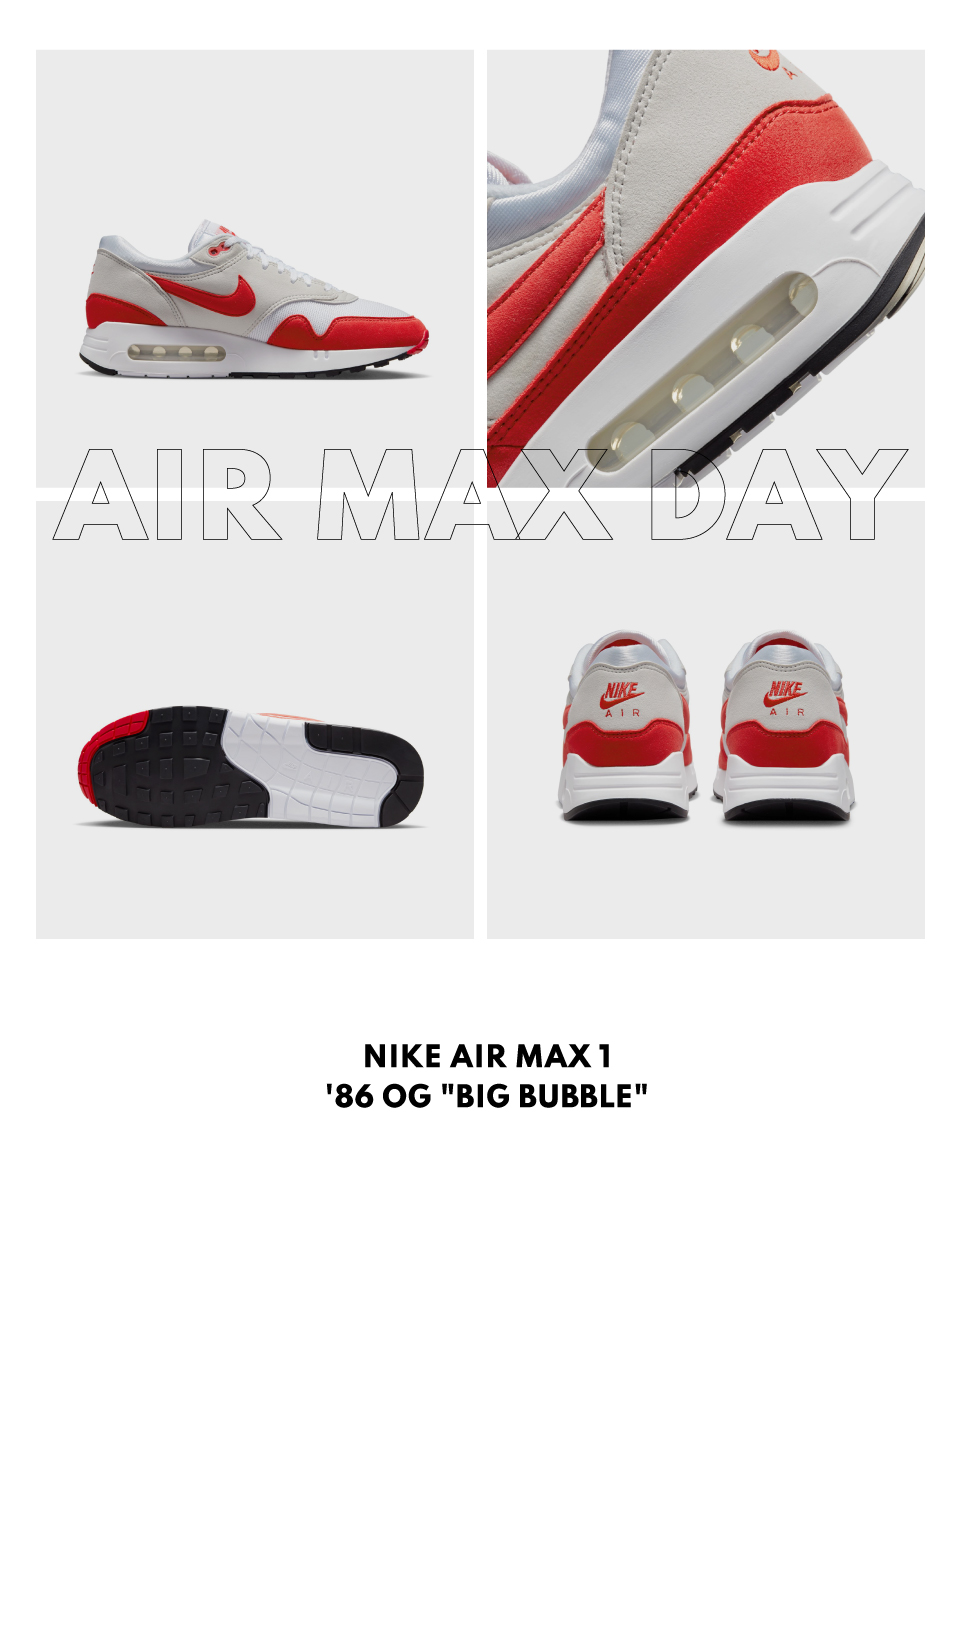 Air Max Day